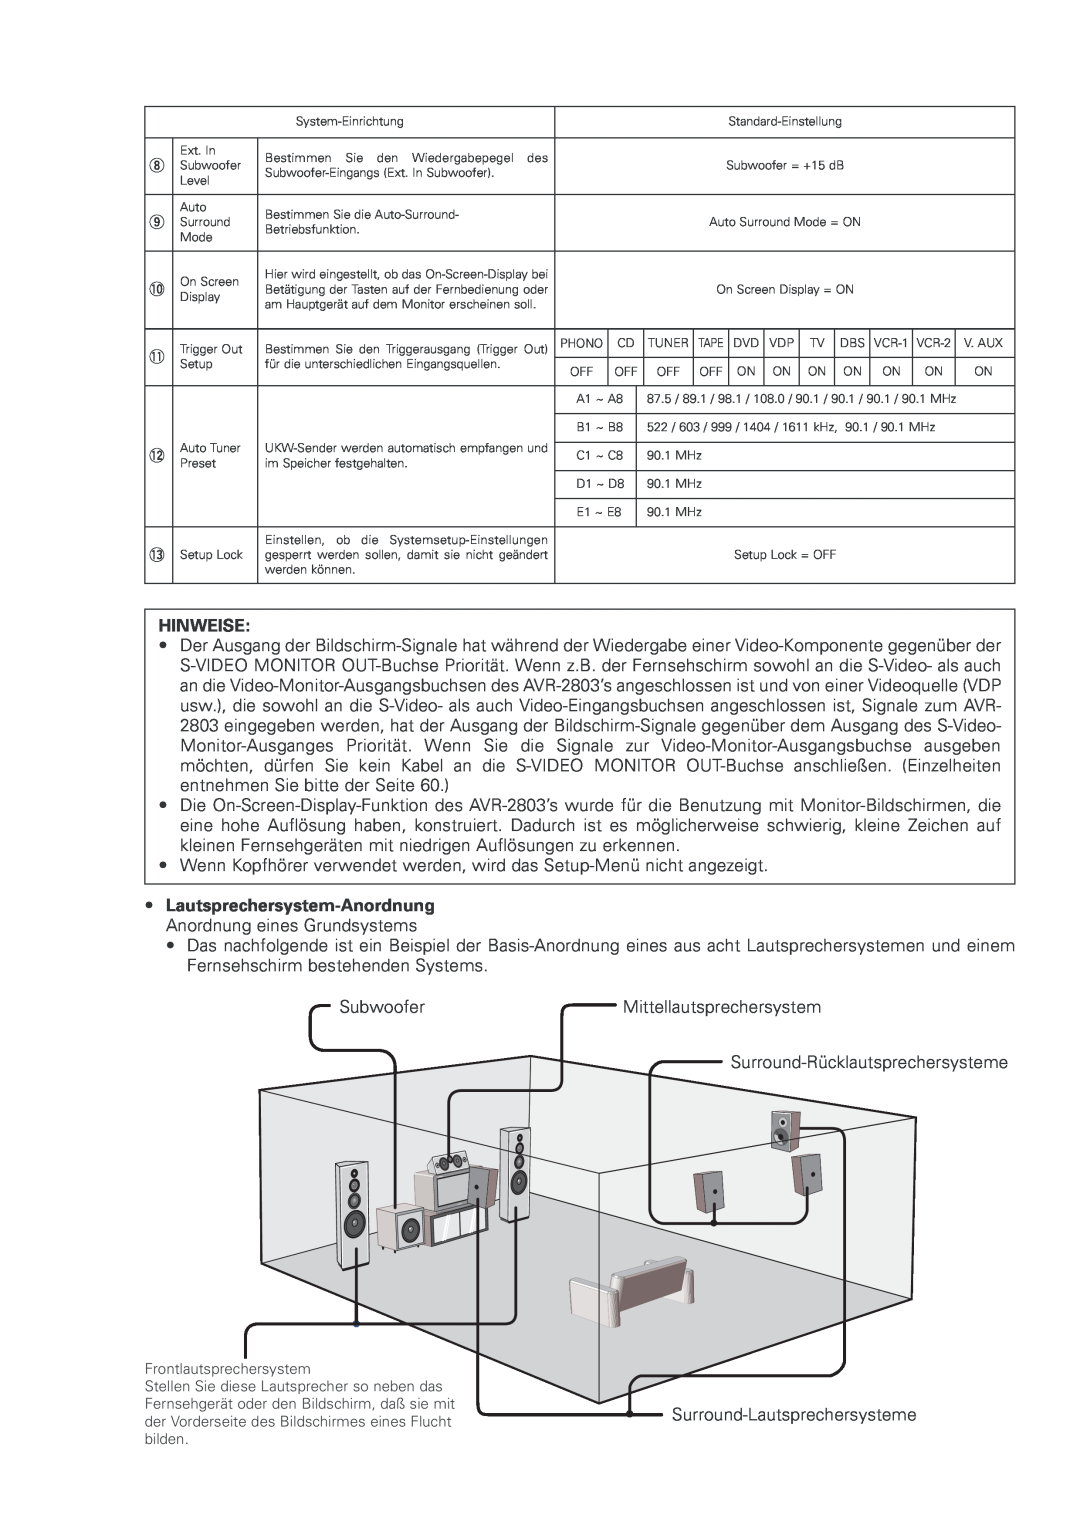 Denon AVR-2803 manual Hinweise, Lautsprechersystem-Anordnung Anordnung eines Grundsystems 